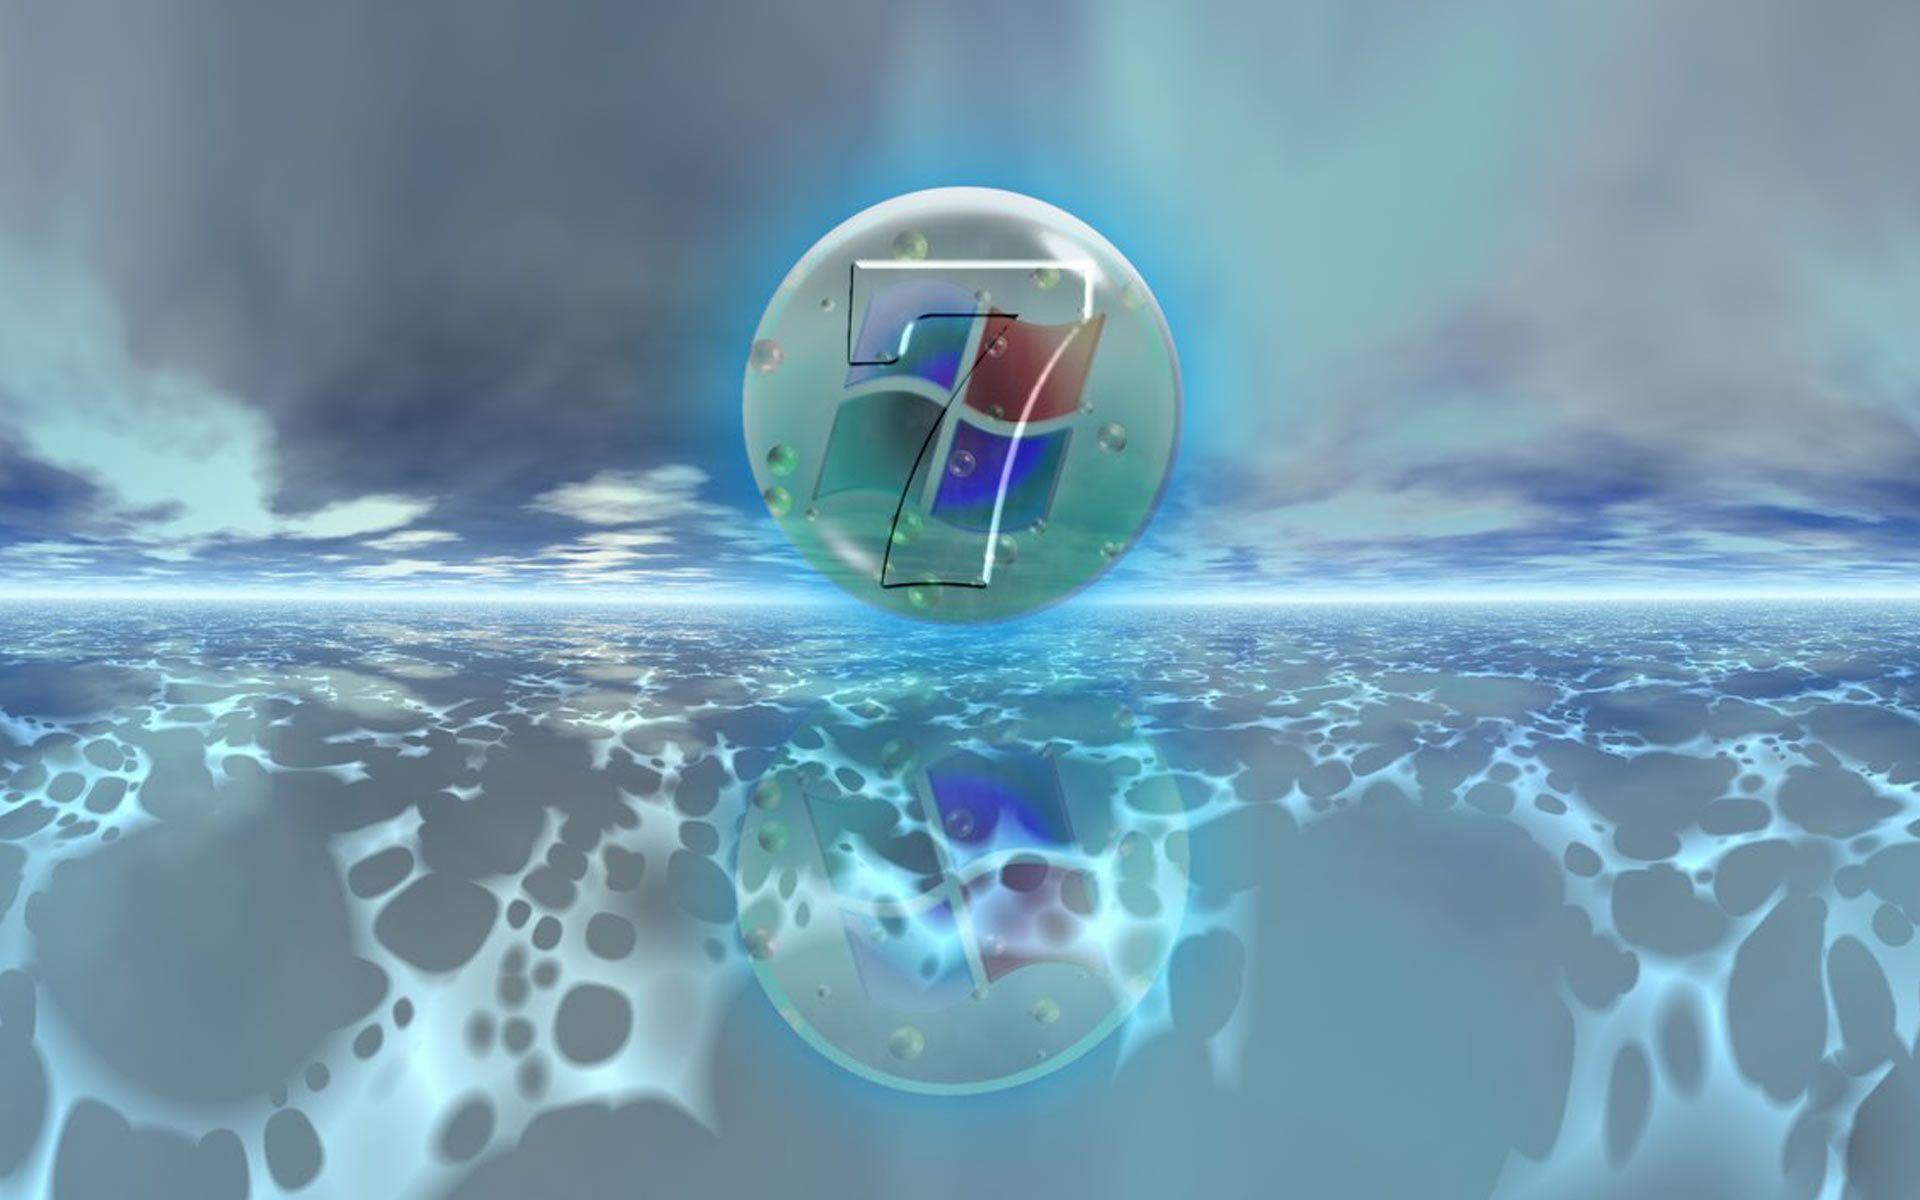 Desktop Wallpaper · Gallery · Windows 7 · Two Ocean windows 7